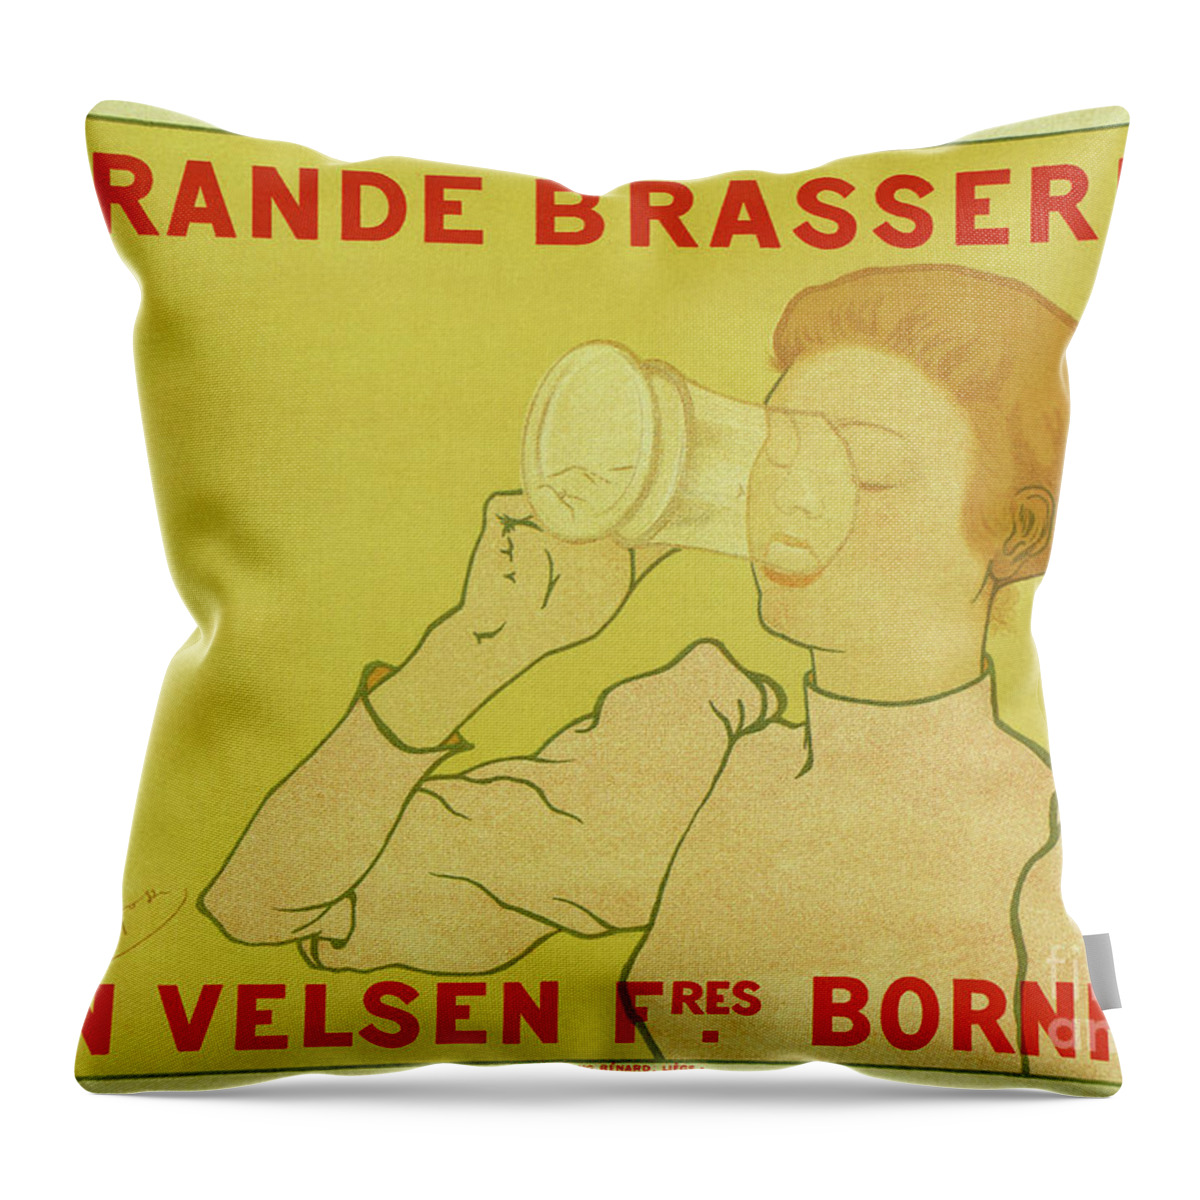 Beer Throw Pillow featuring the drawing Van Velsen Belgian Beer by Heidi De Leeuw